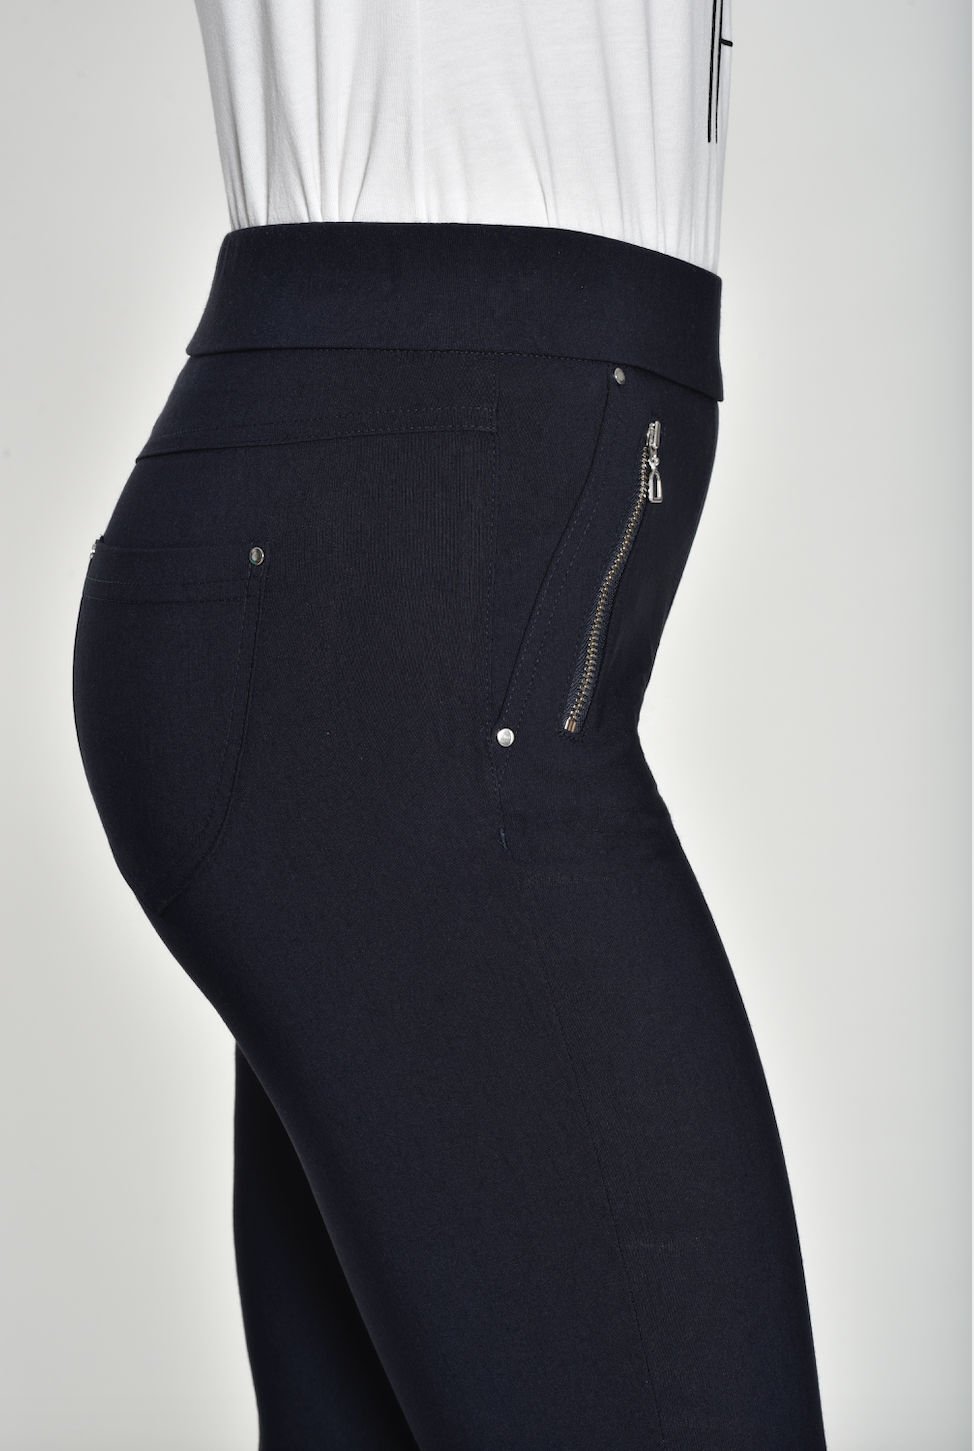 Robell Nena Black Zip Detail Trousers